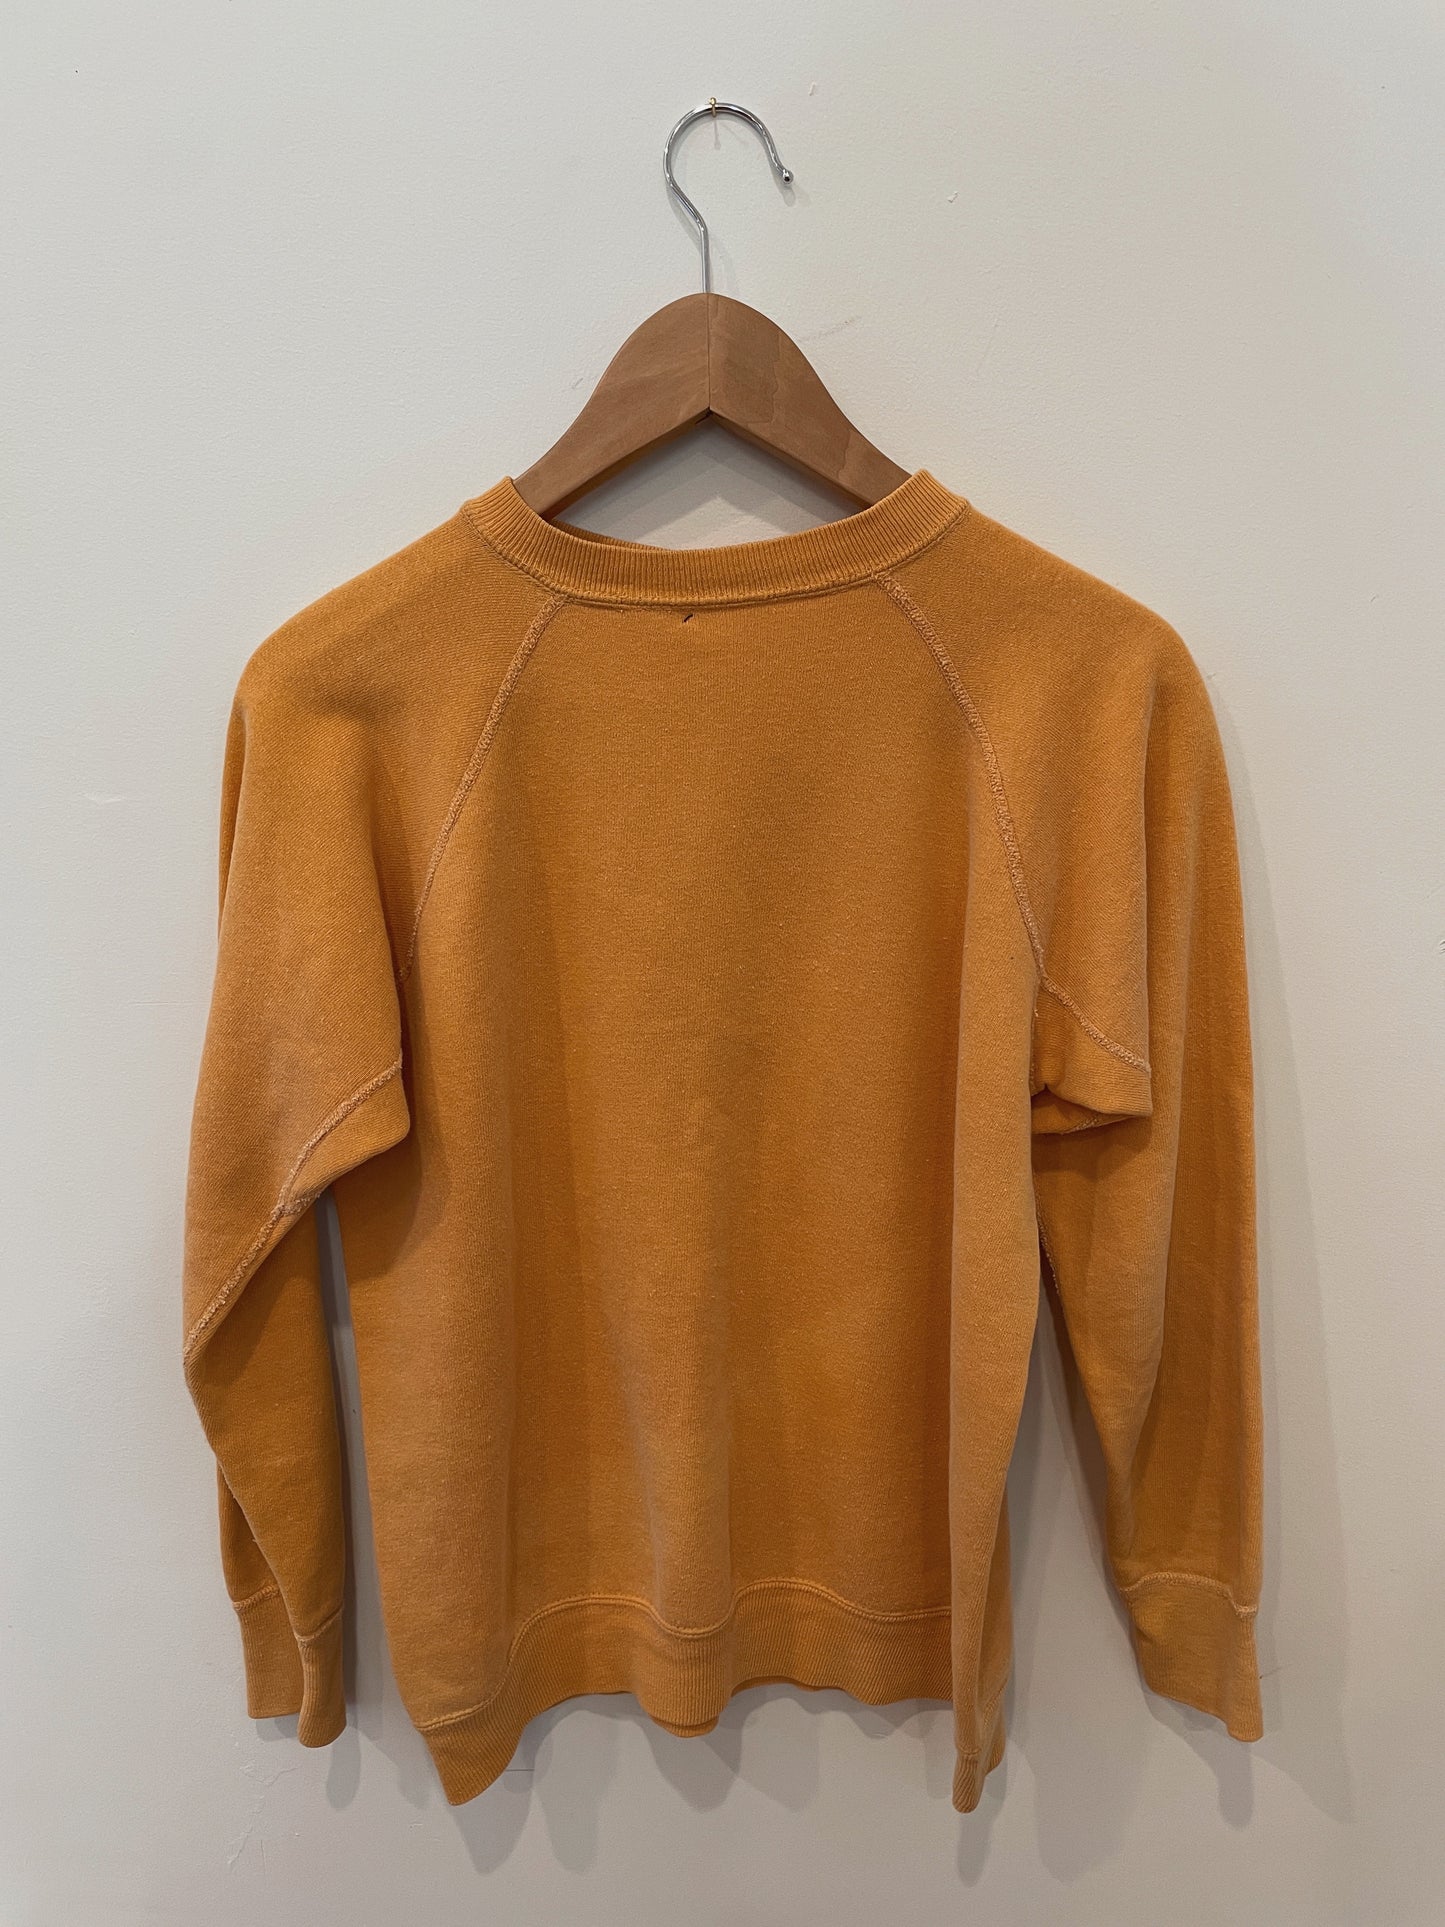 1967 Twiggy Sweatshirt